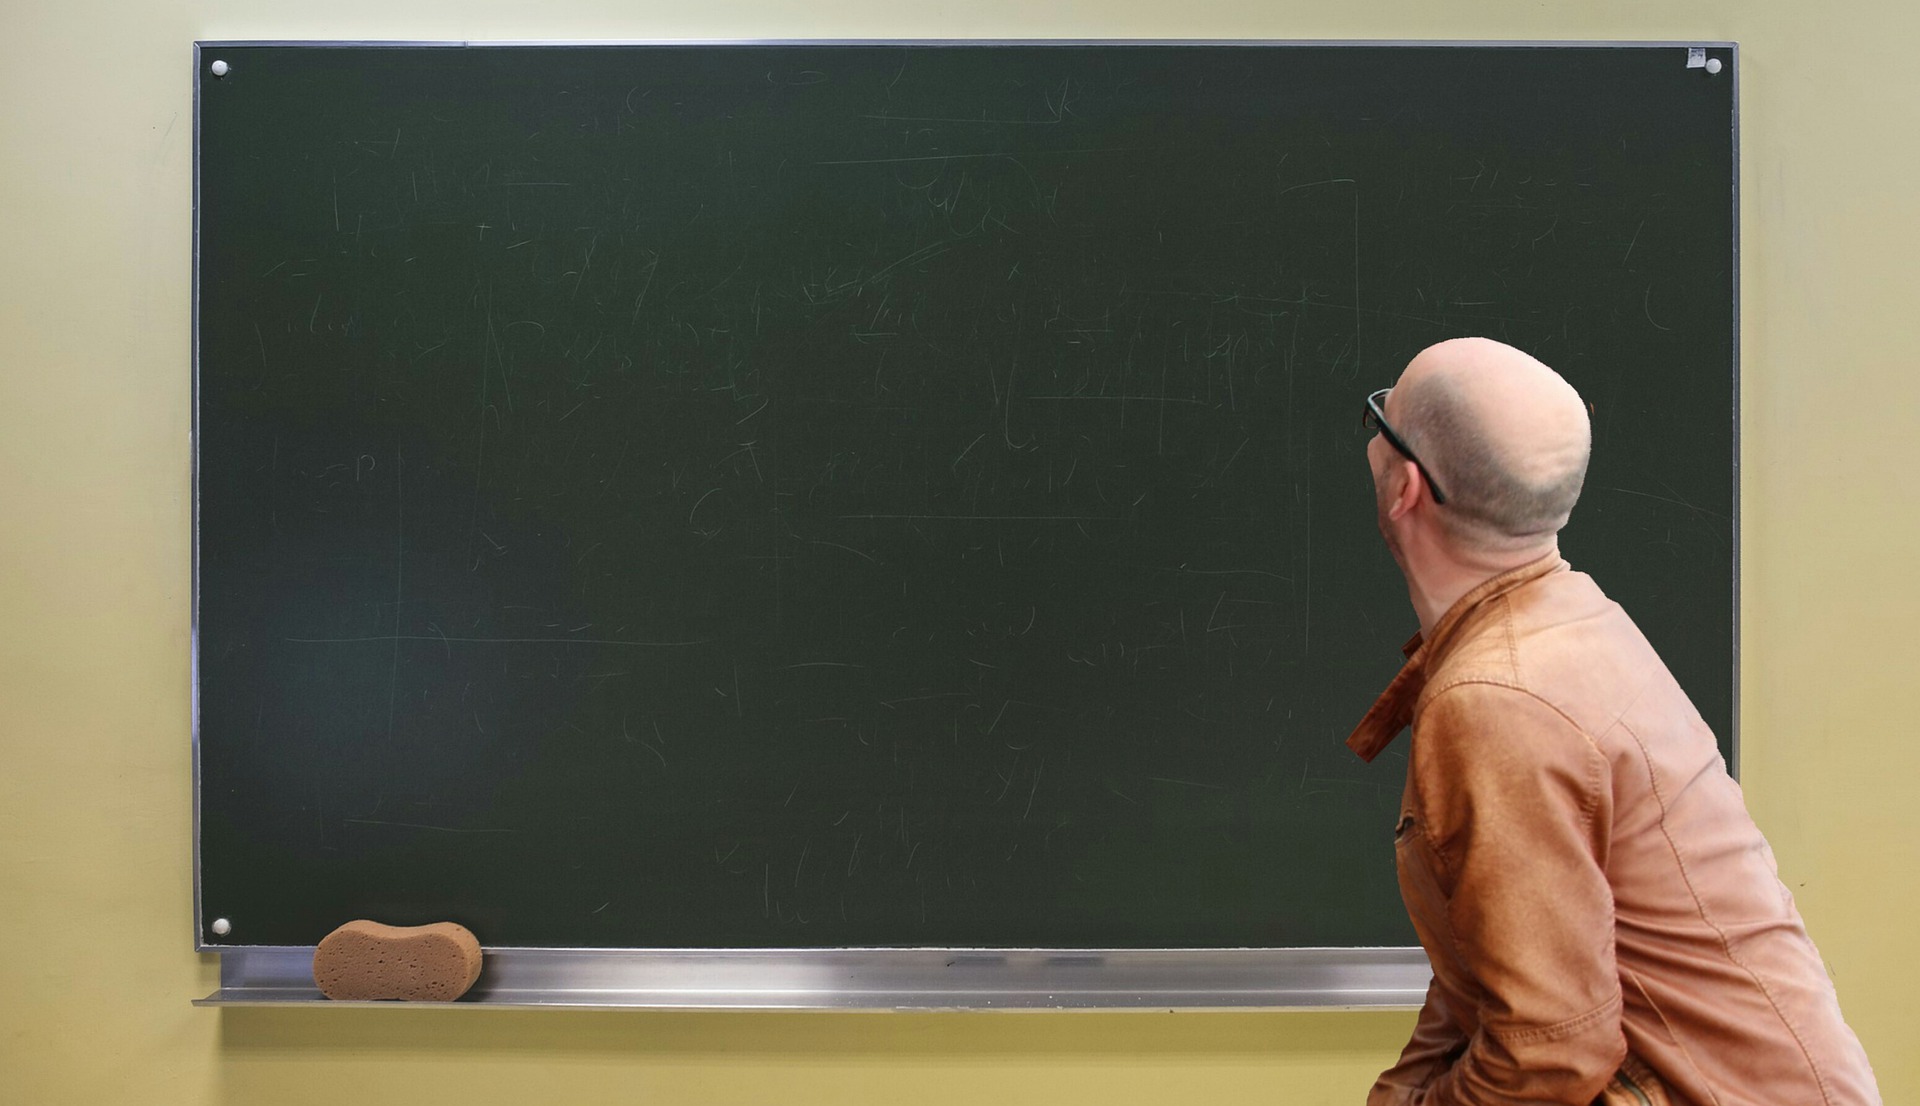 Syntolkning: En man står framför en svart tavla, han stirrar på tavlan där inget är skrivet ännu.